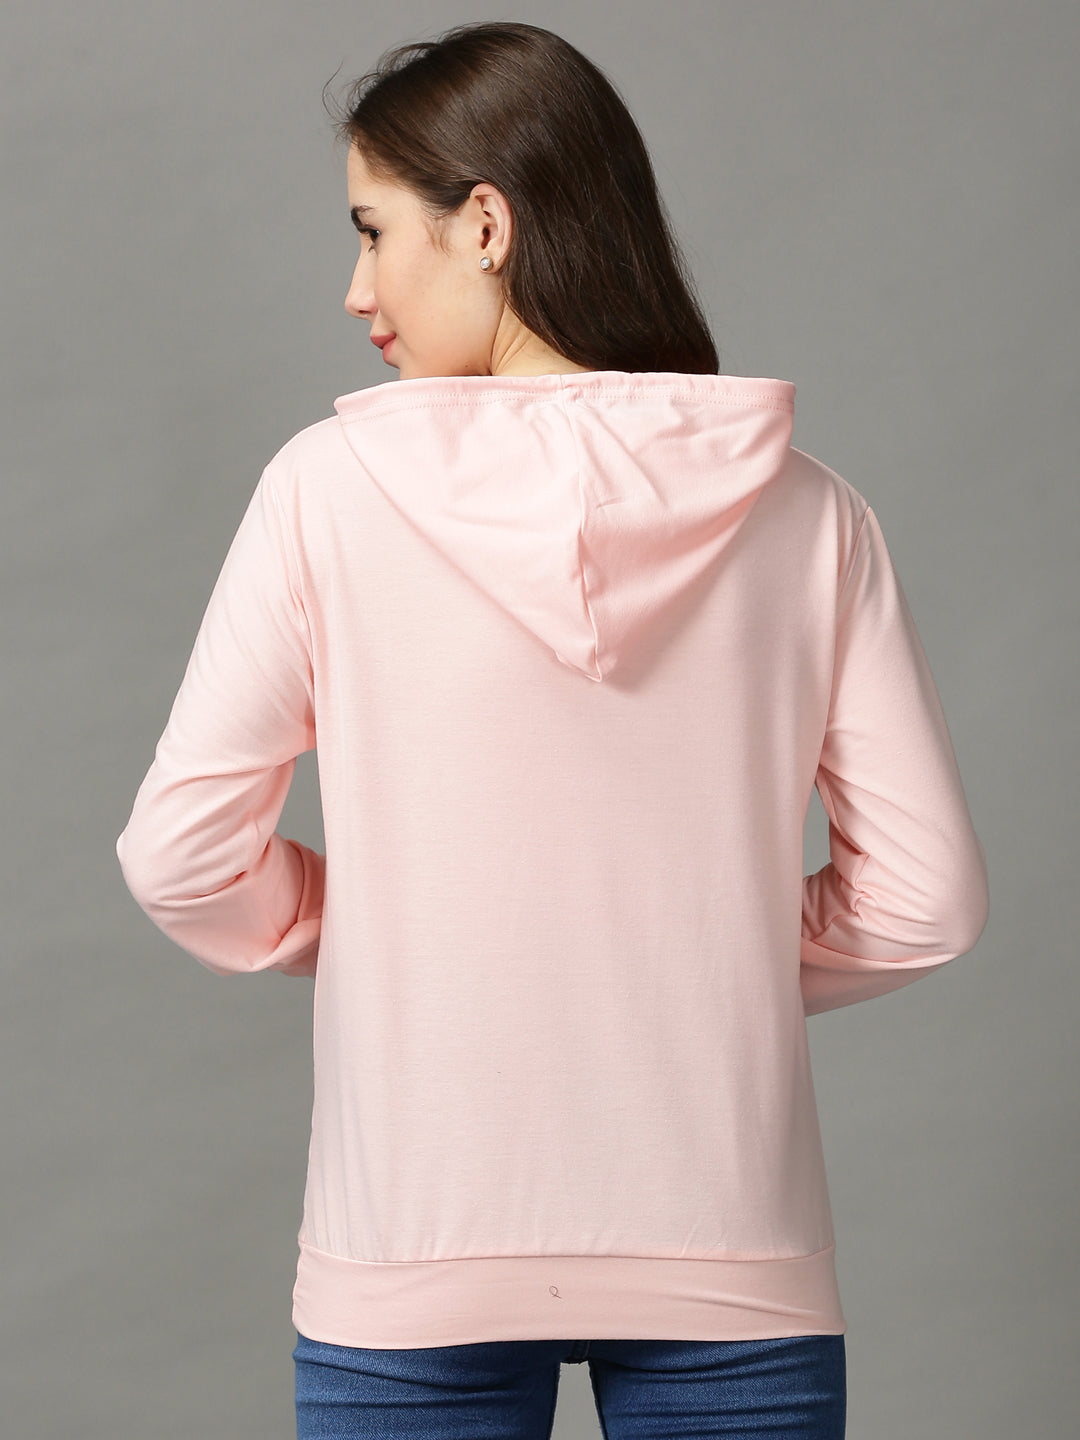 Women's Pink Solid Sweatshirt